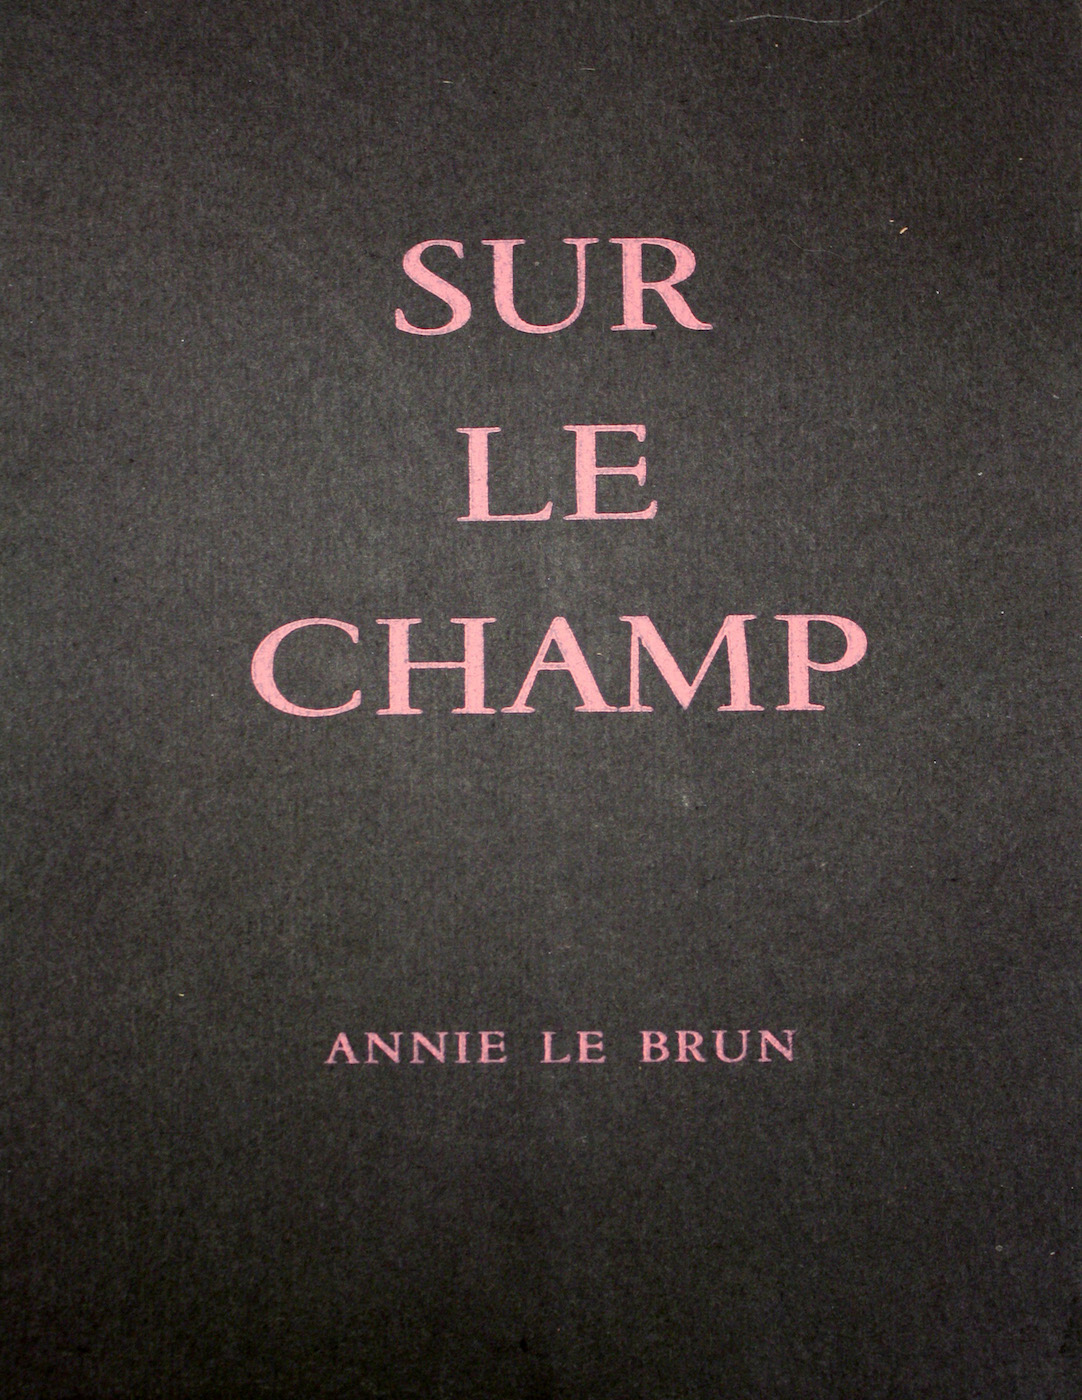 Annie Le Brun, <br /><em>Sur le champ</em>, 1967